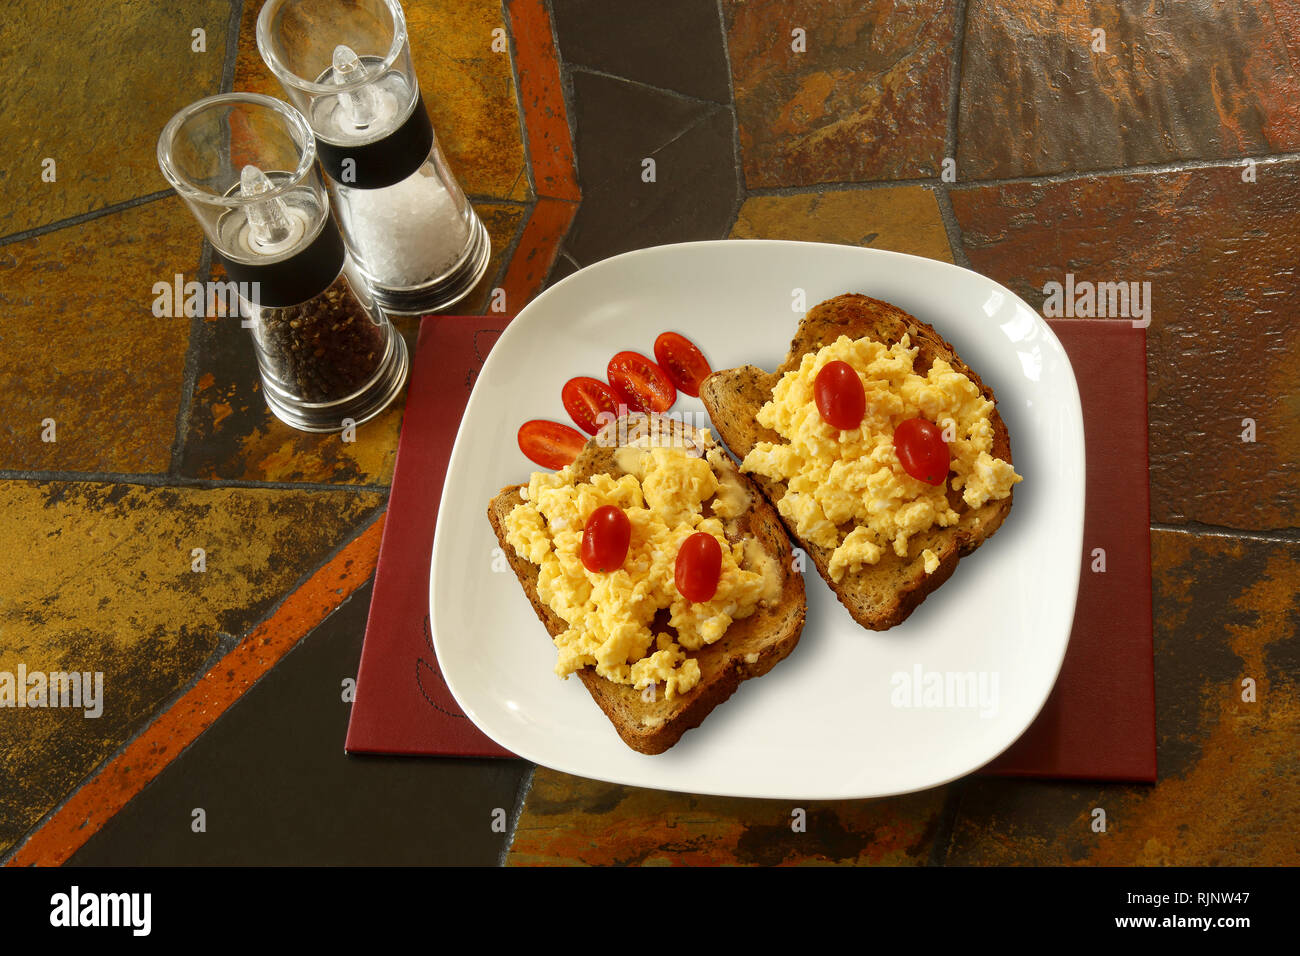 Uova strapazzate su pane tostato con pomodori prugne. Lo sfondo è un tavolo piastrellato e mostra sale e pepi mulini Foto Stock